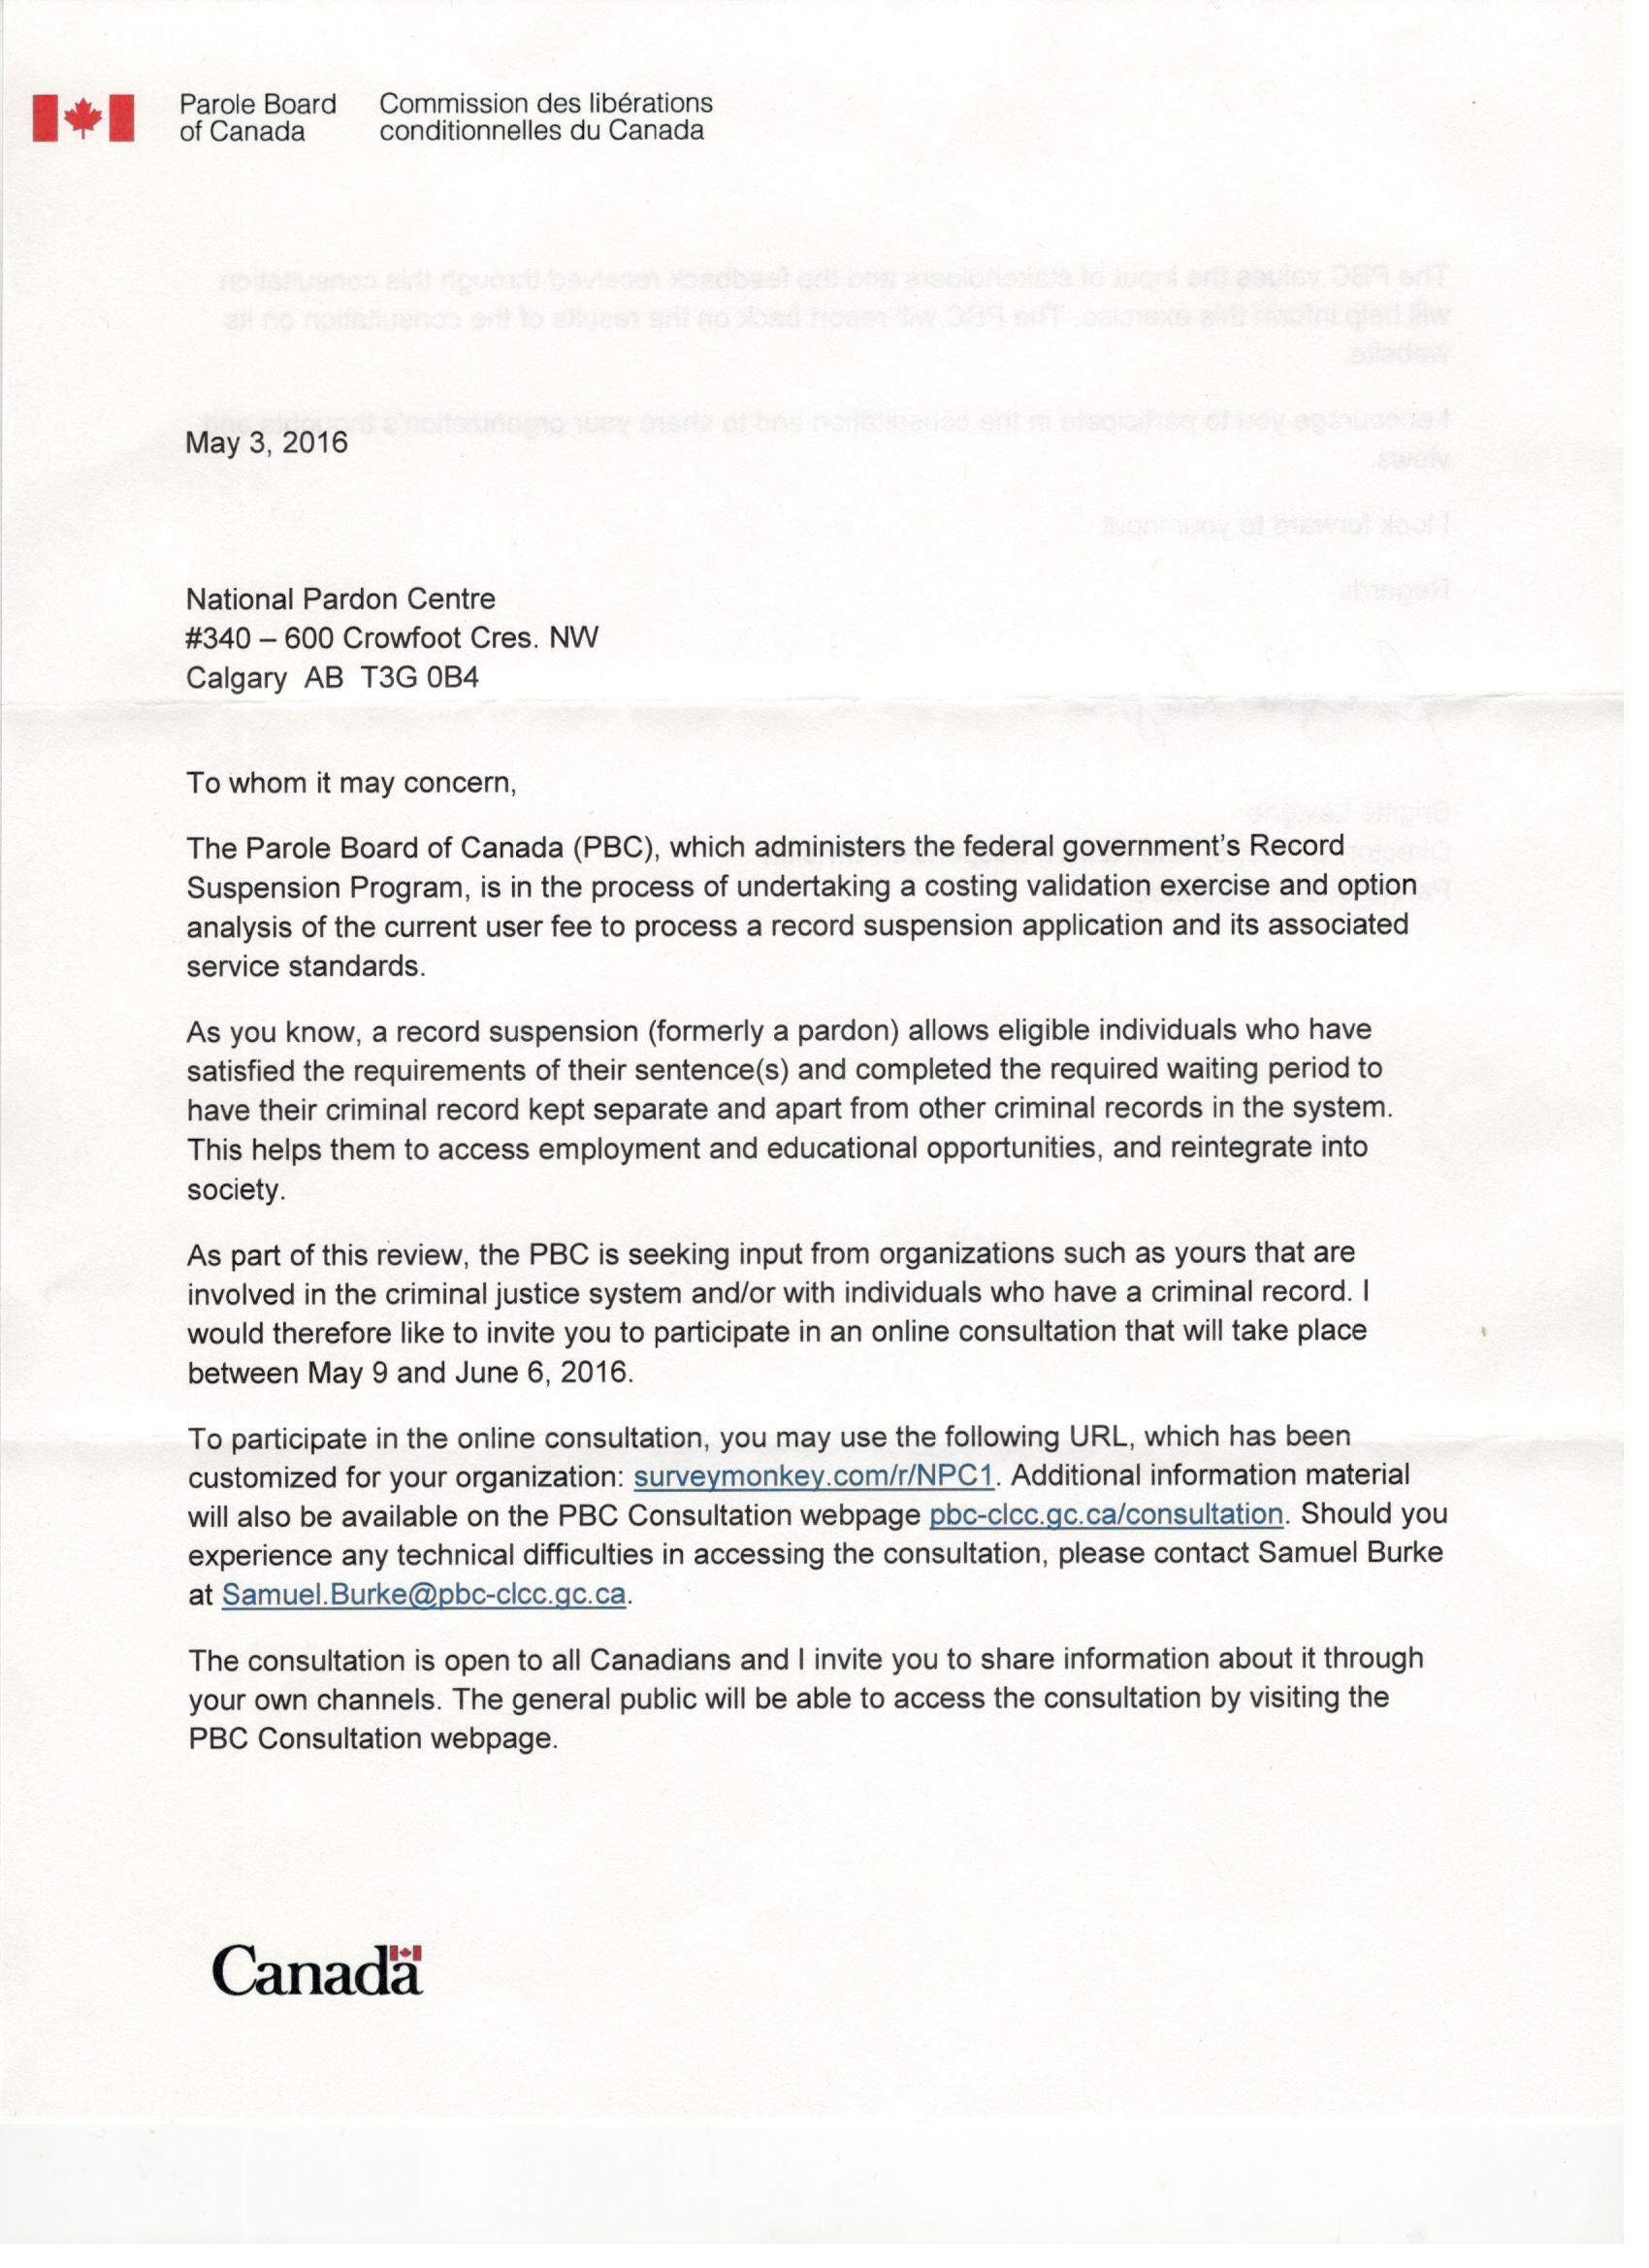 Parole Board of Canada Letter